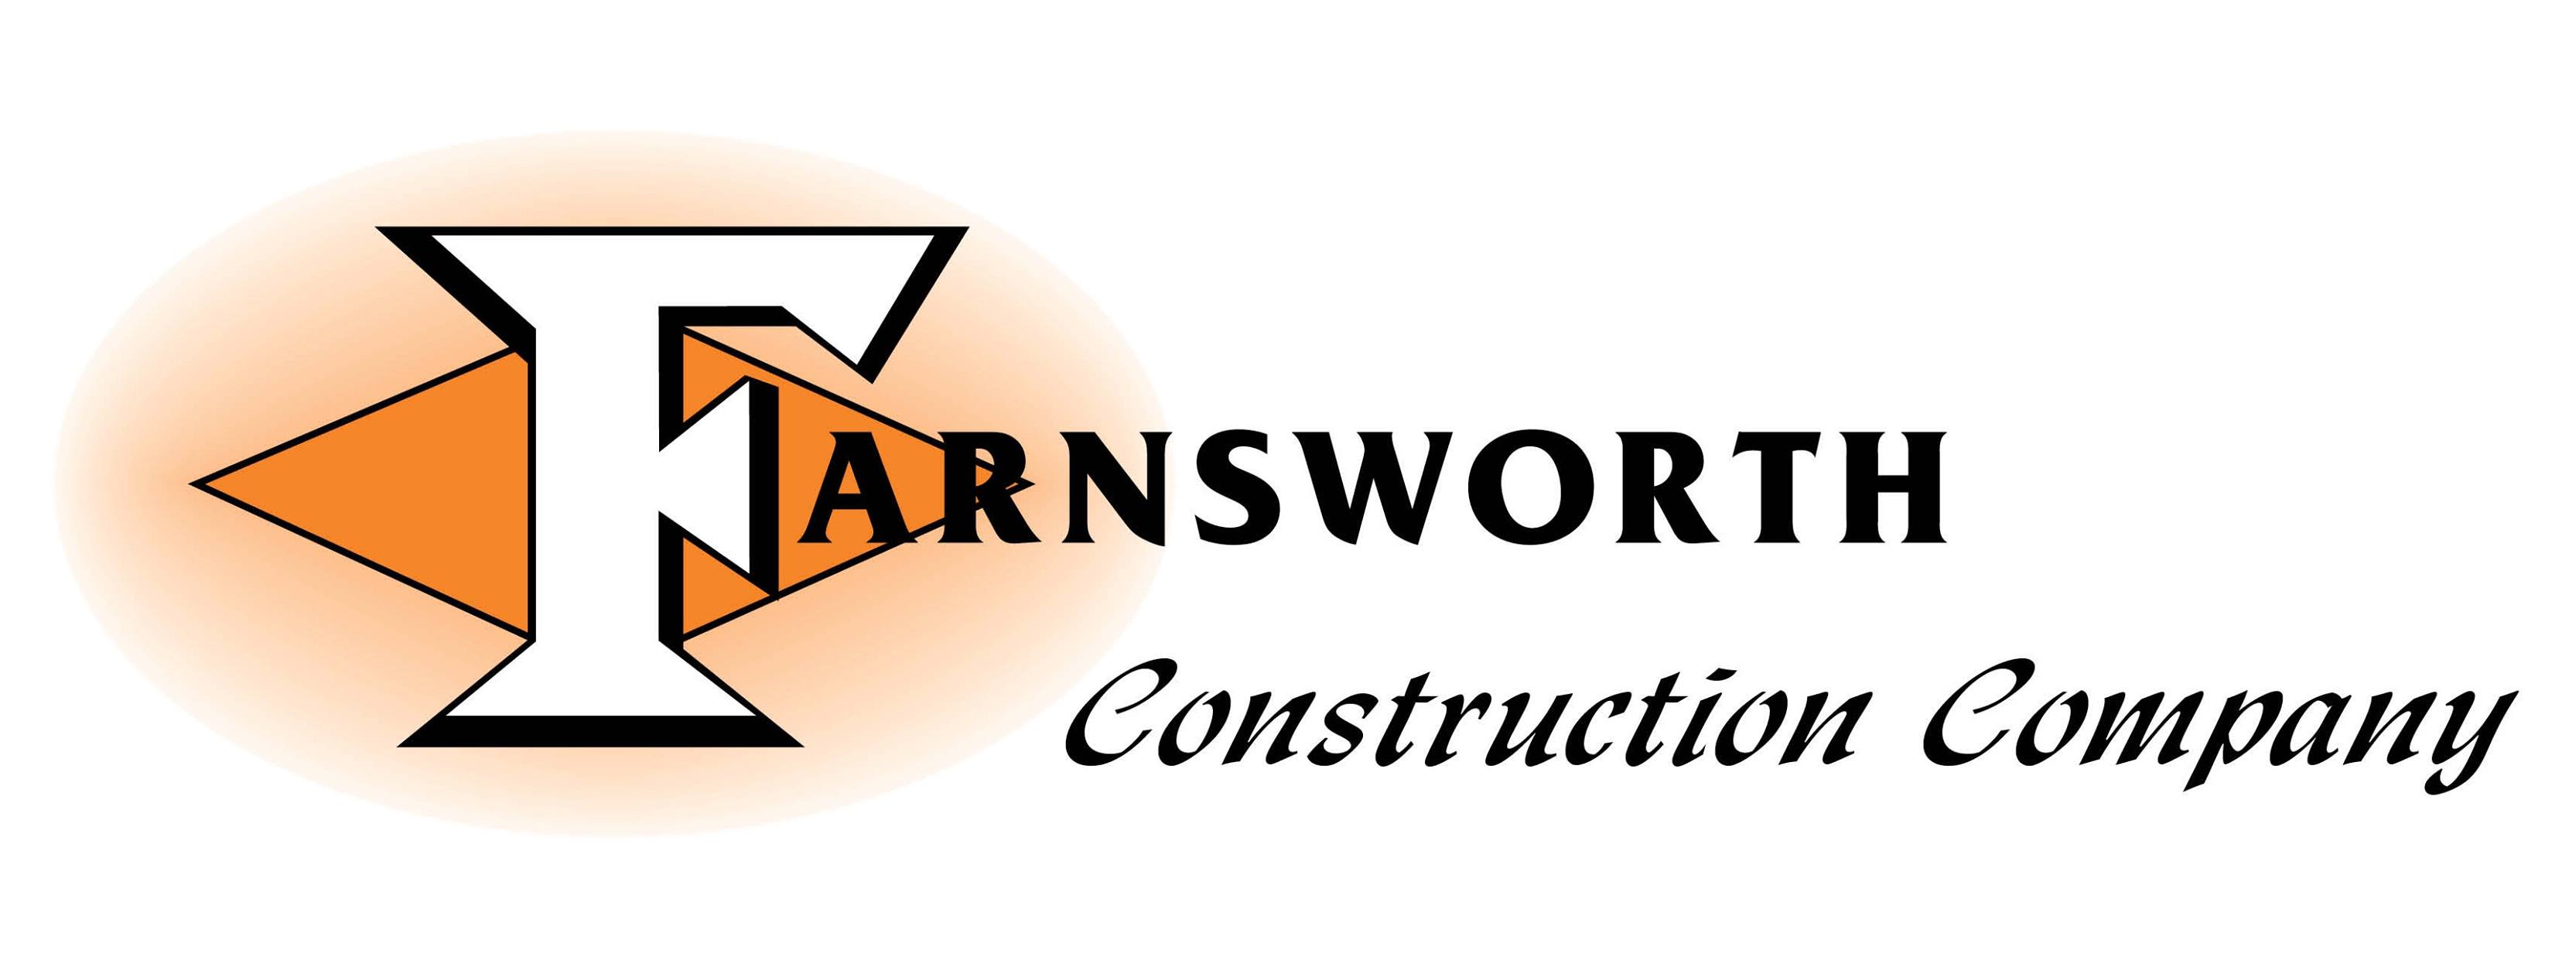 Farnsworth Construction Company